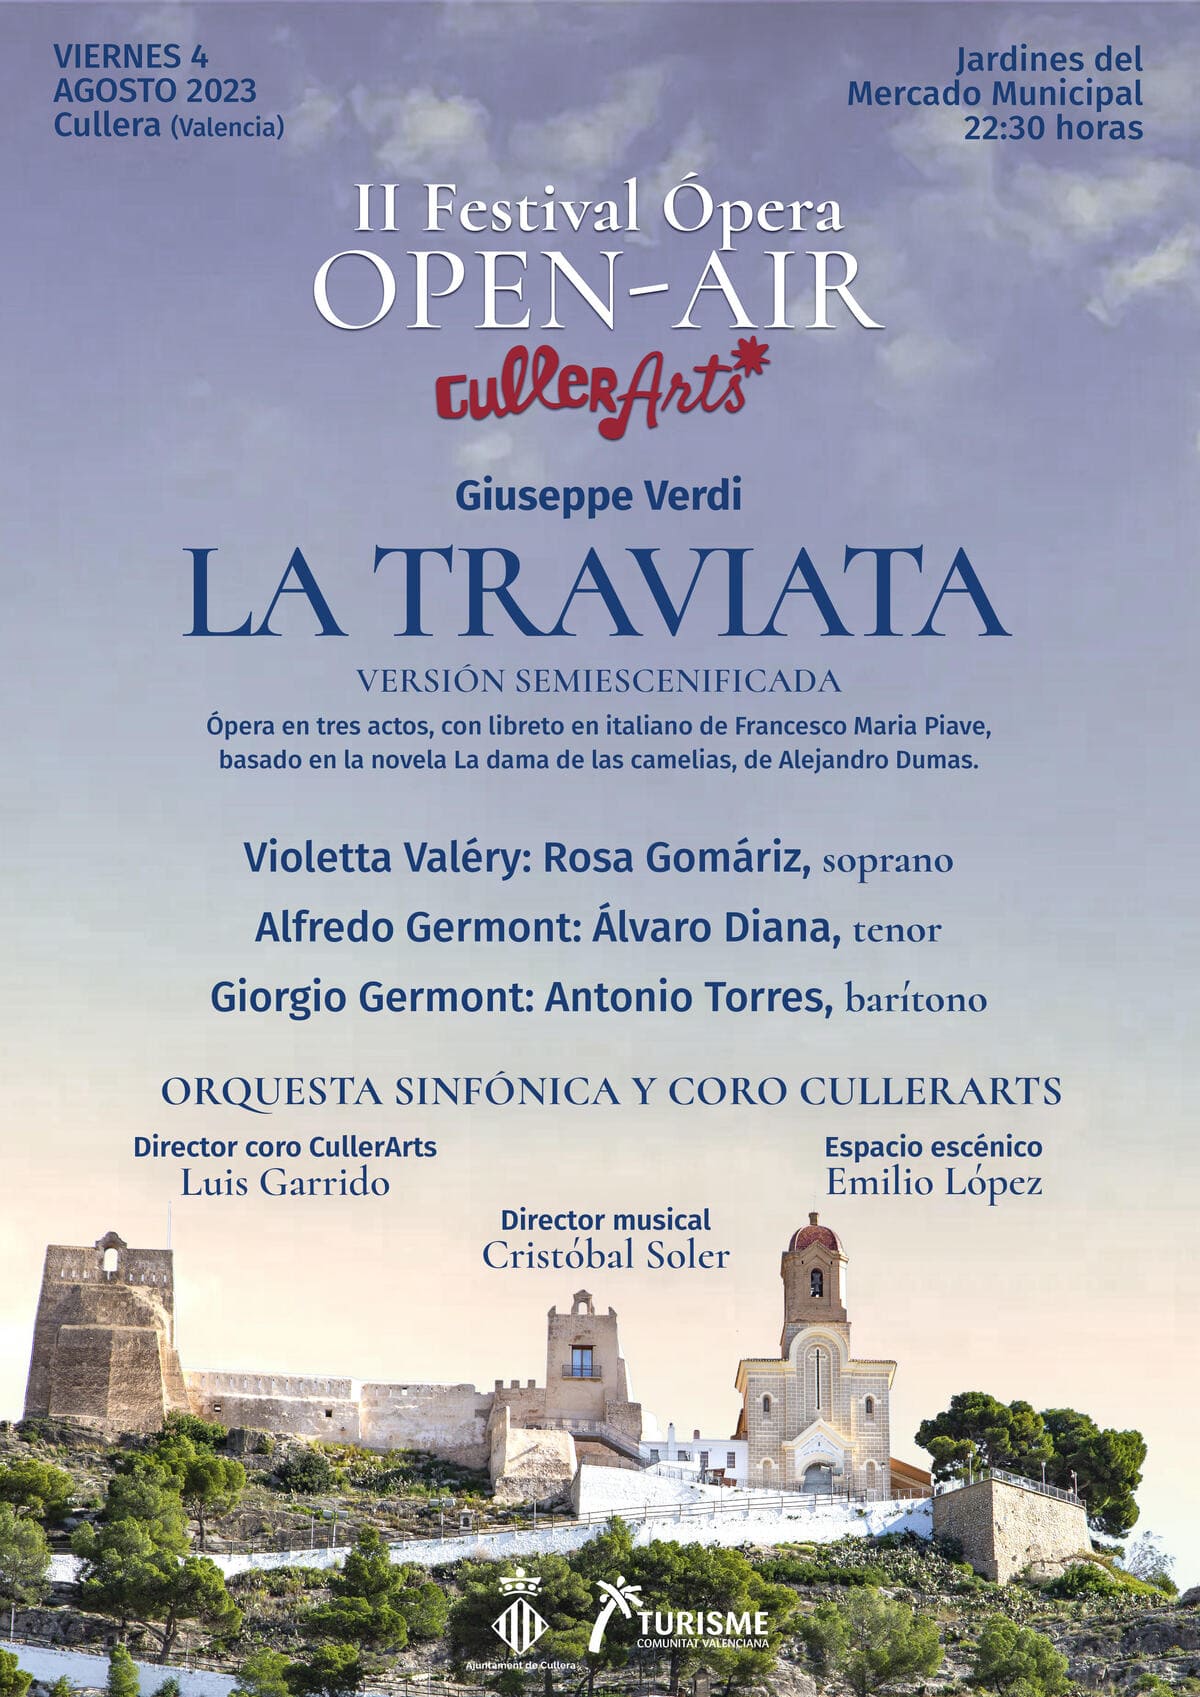 La Traviata - Ópera OpenAir CullerArts 2023